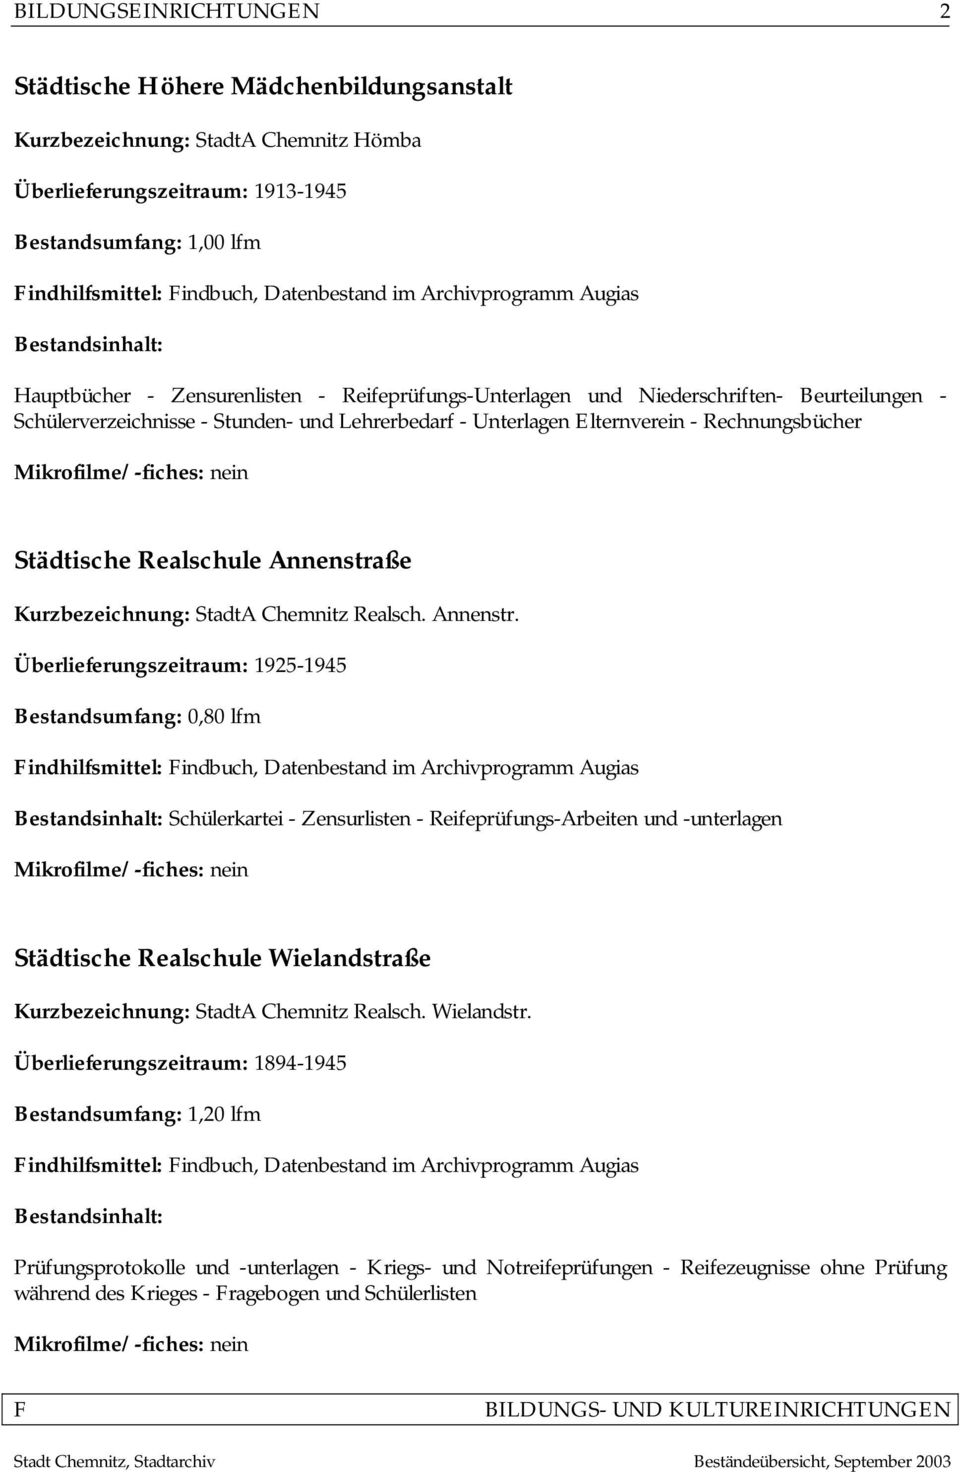 Elternverein - Rechnungsbücher Mikrofilme/-fiches: nein Städtische Realschule Annenstra